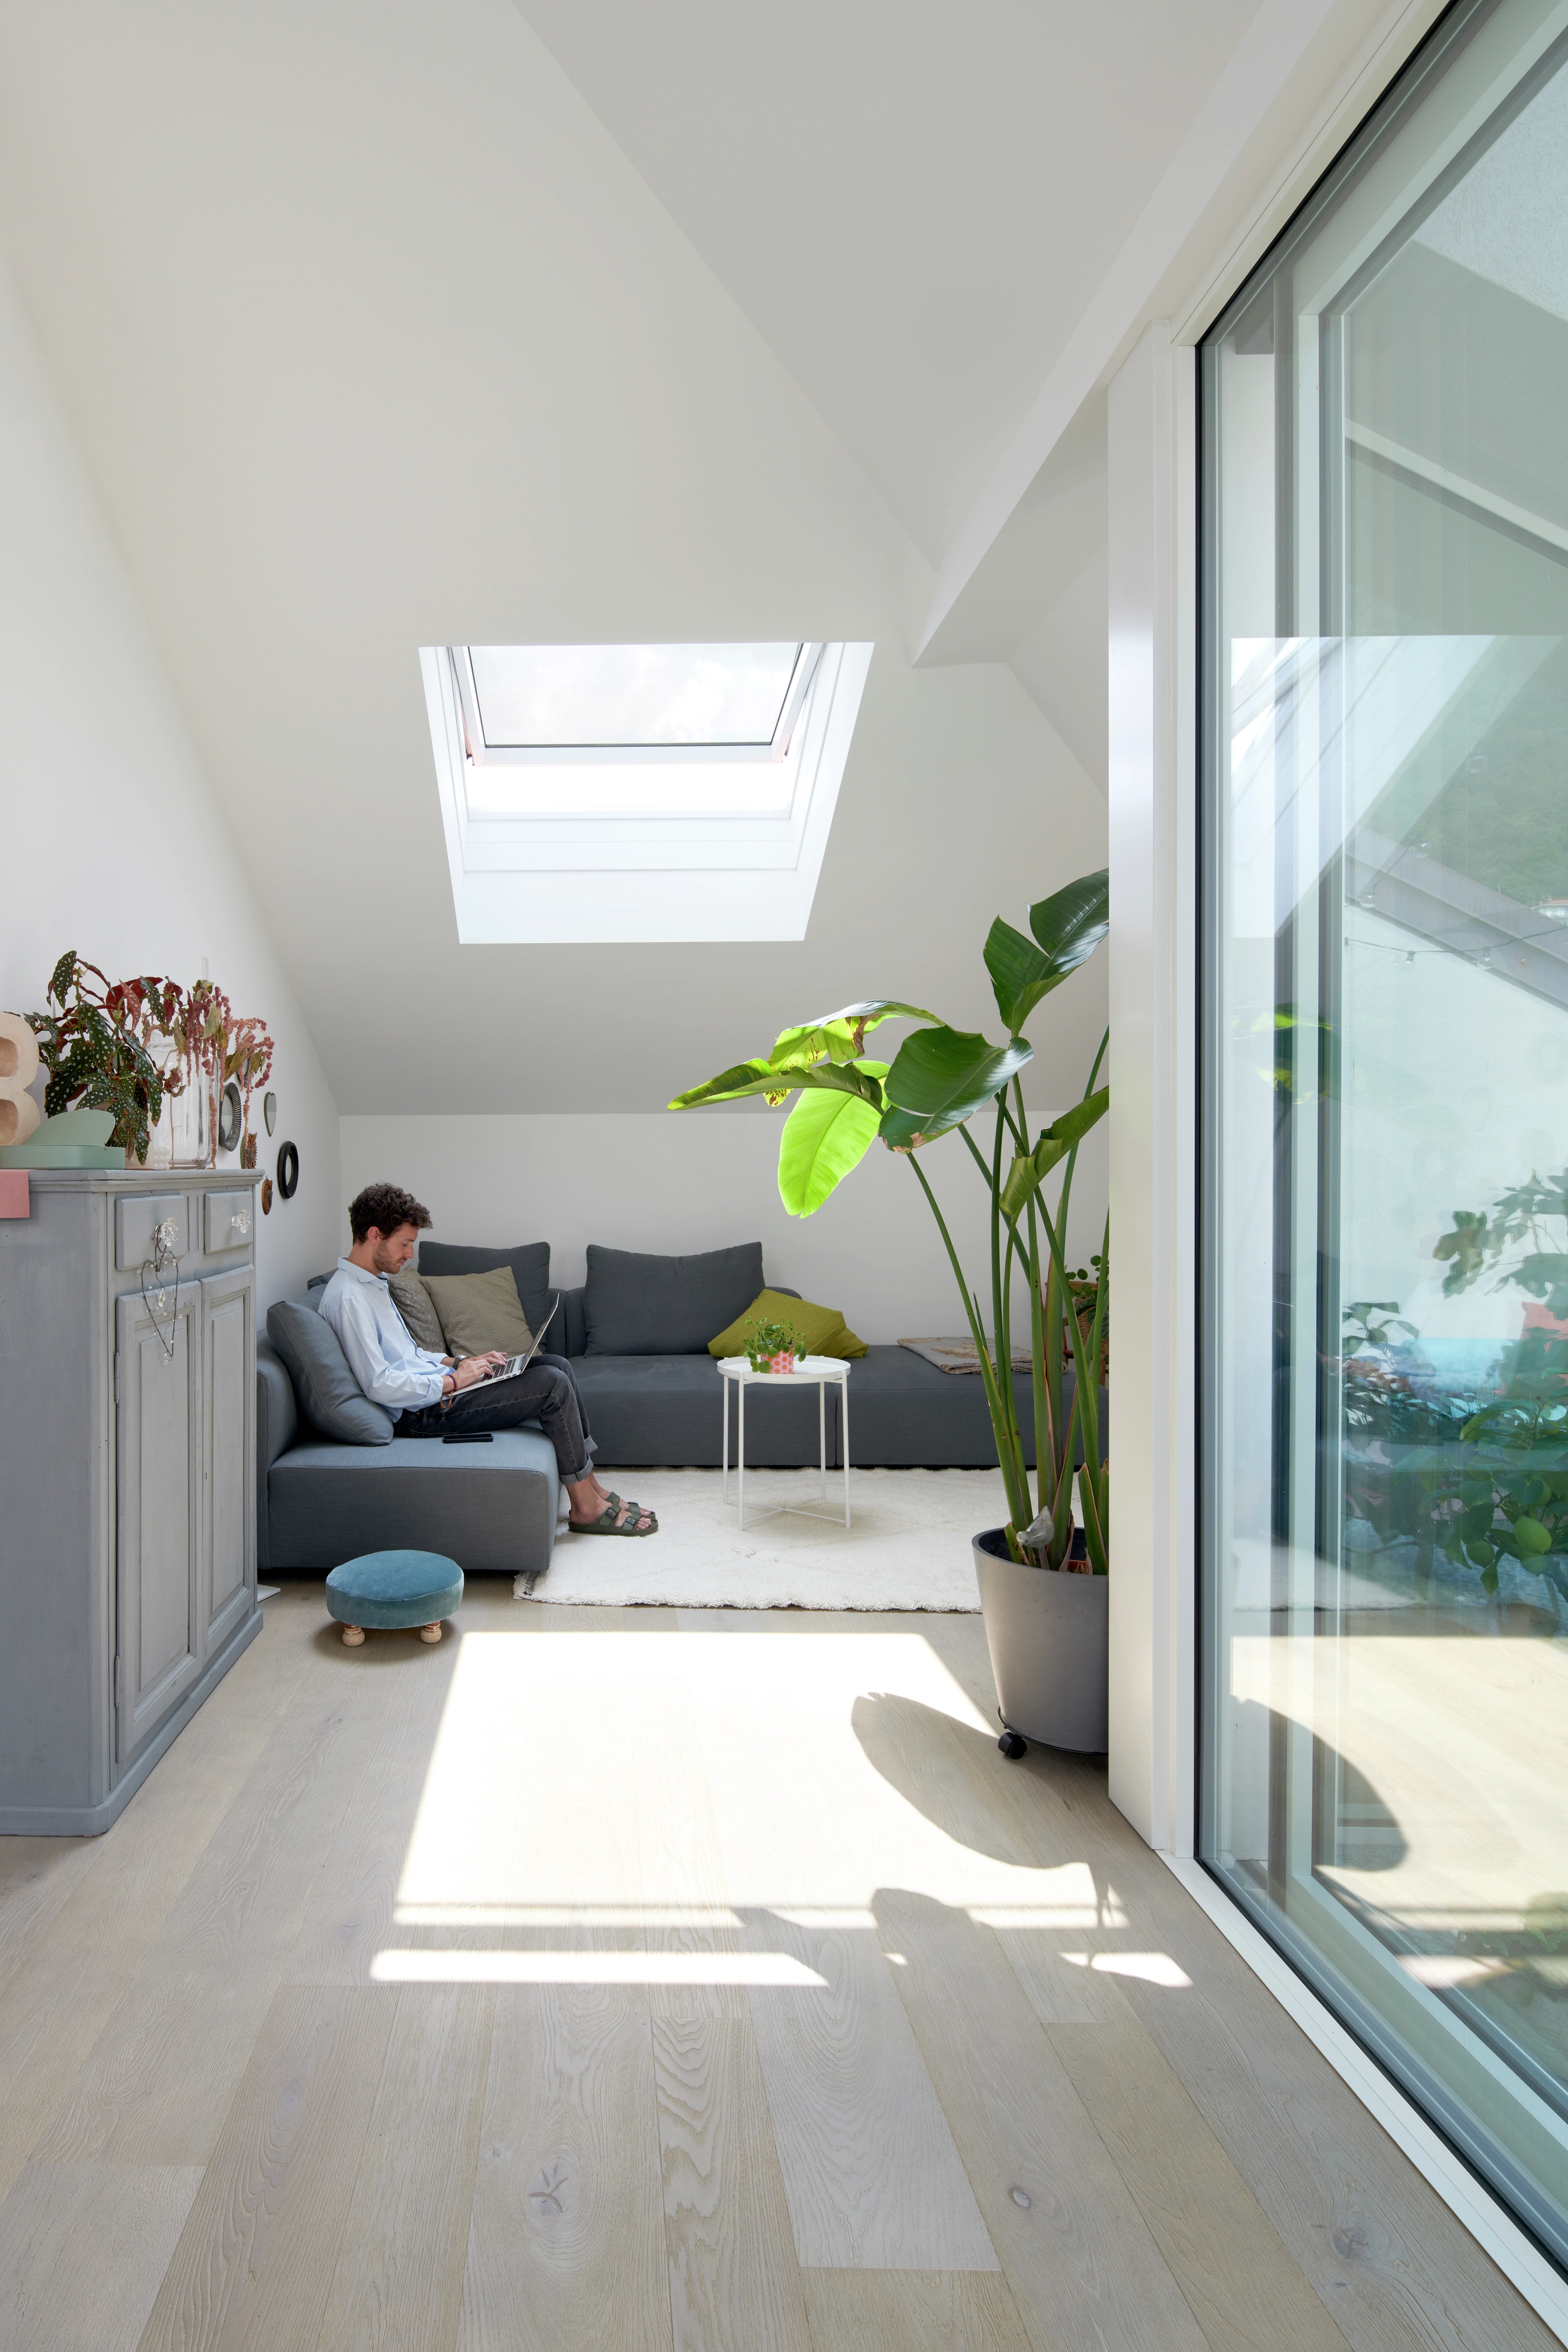 Salon moderne dans le comble avec fenêtre de toit VELUX, canapé gris et plantes vertes.